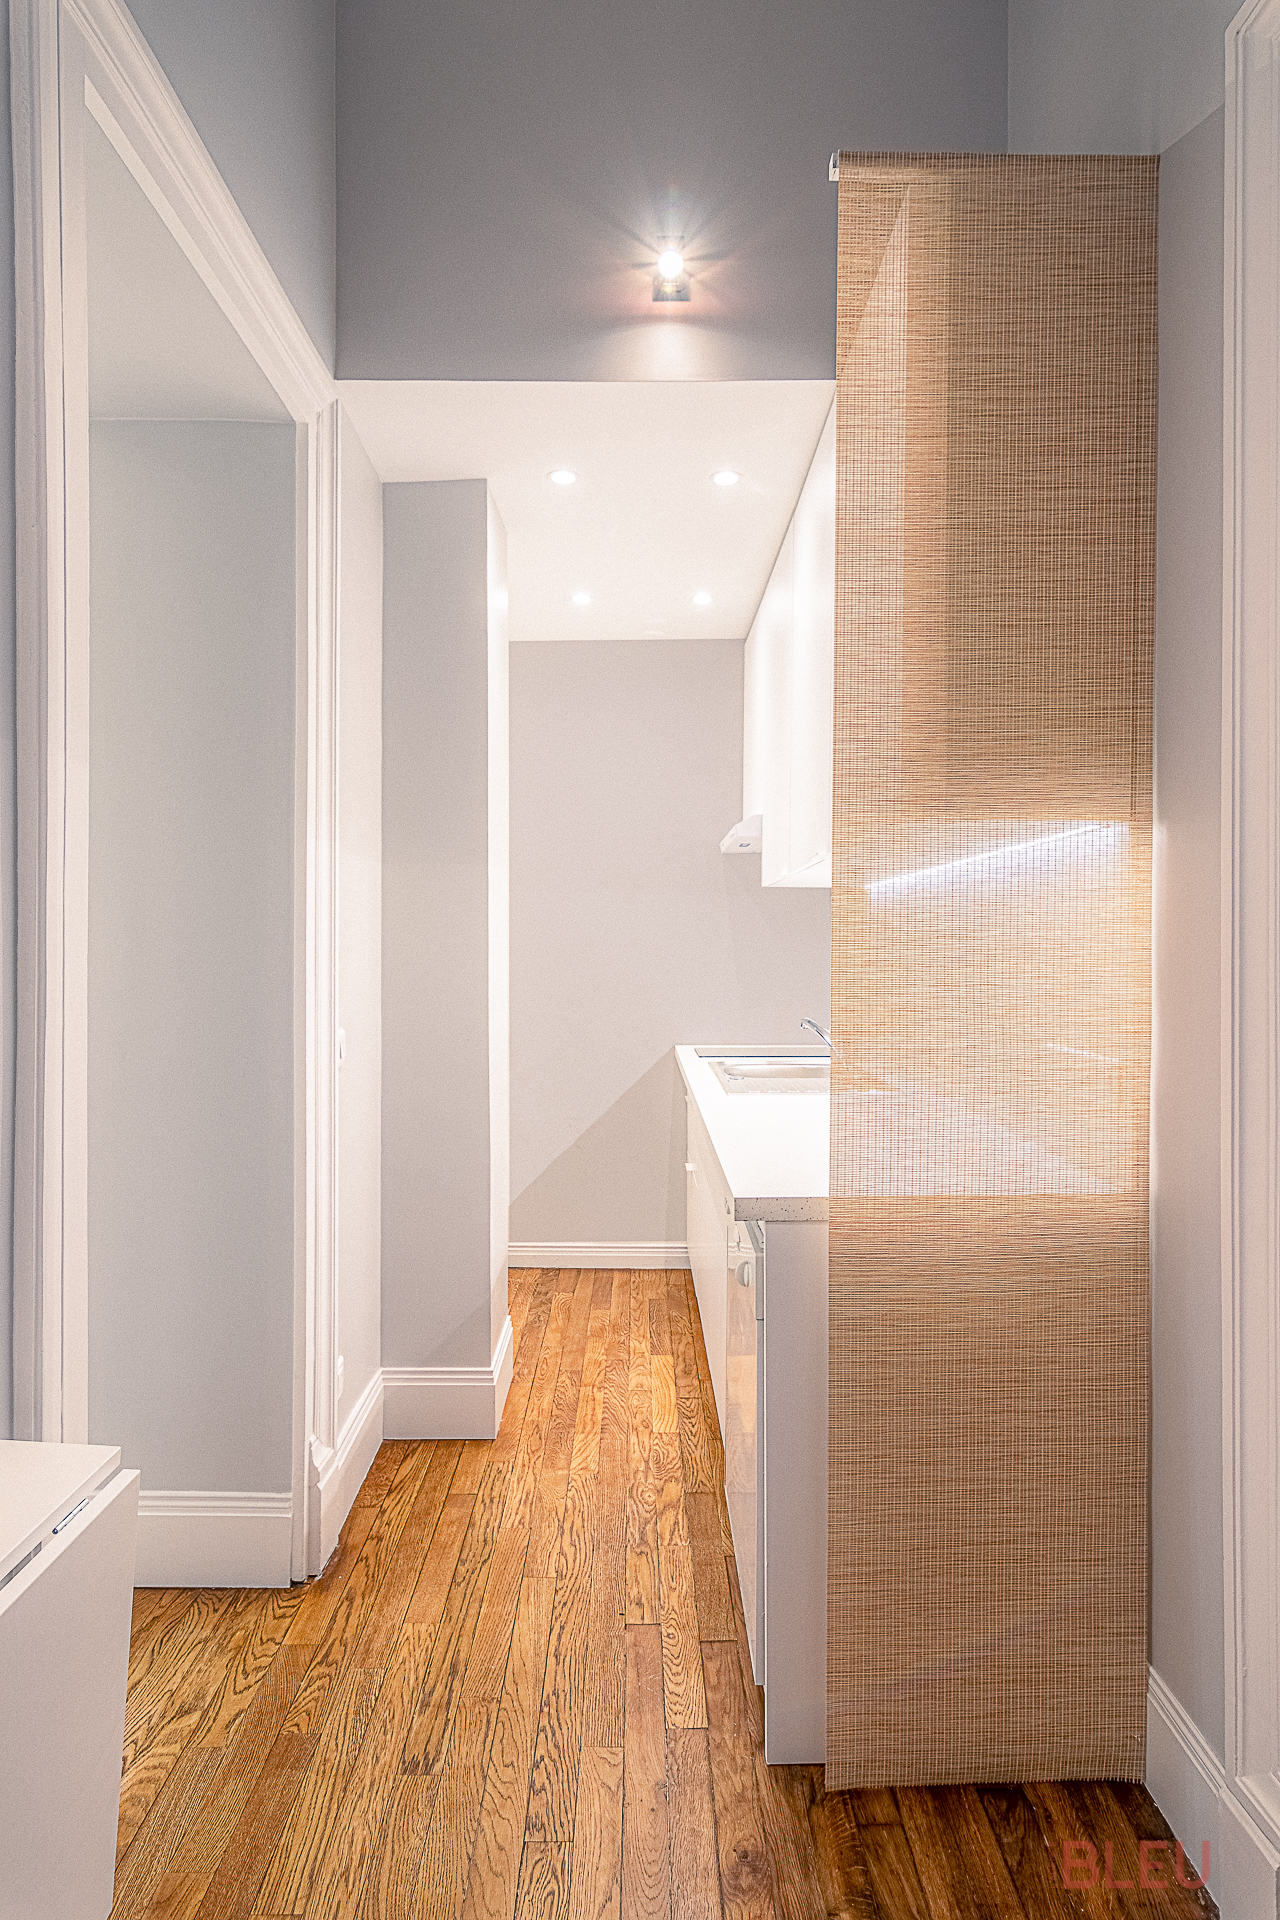 Cuisine moderne et minimaliste dans un appartement haussmannien rénové par le cabinet d'architecture parisien Agence BLEU, optimisant l'espace avec des éléments de design intérieur fonctionnels et esthétiques.